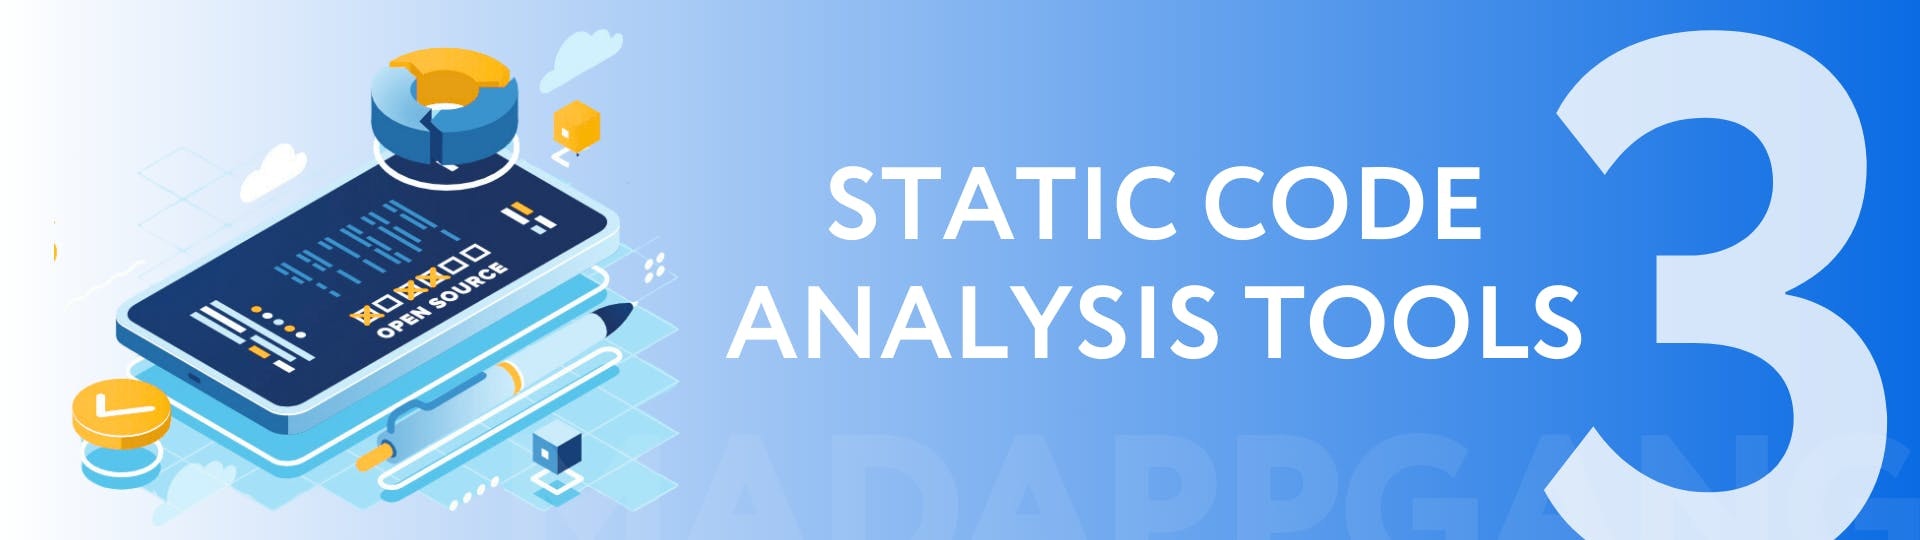 Static code analysis tools